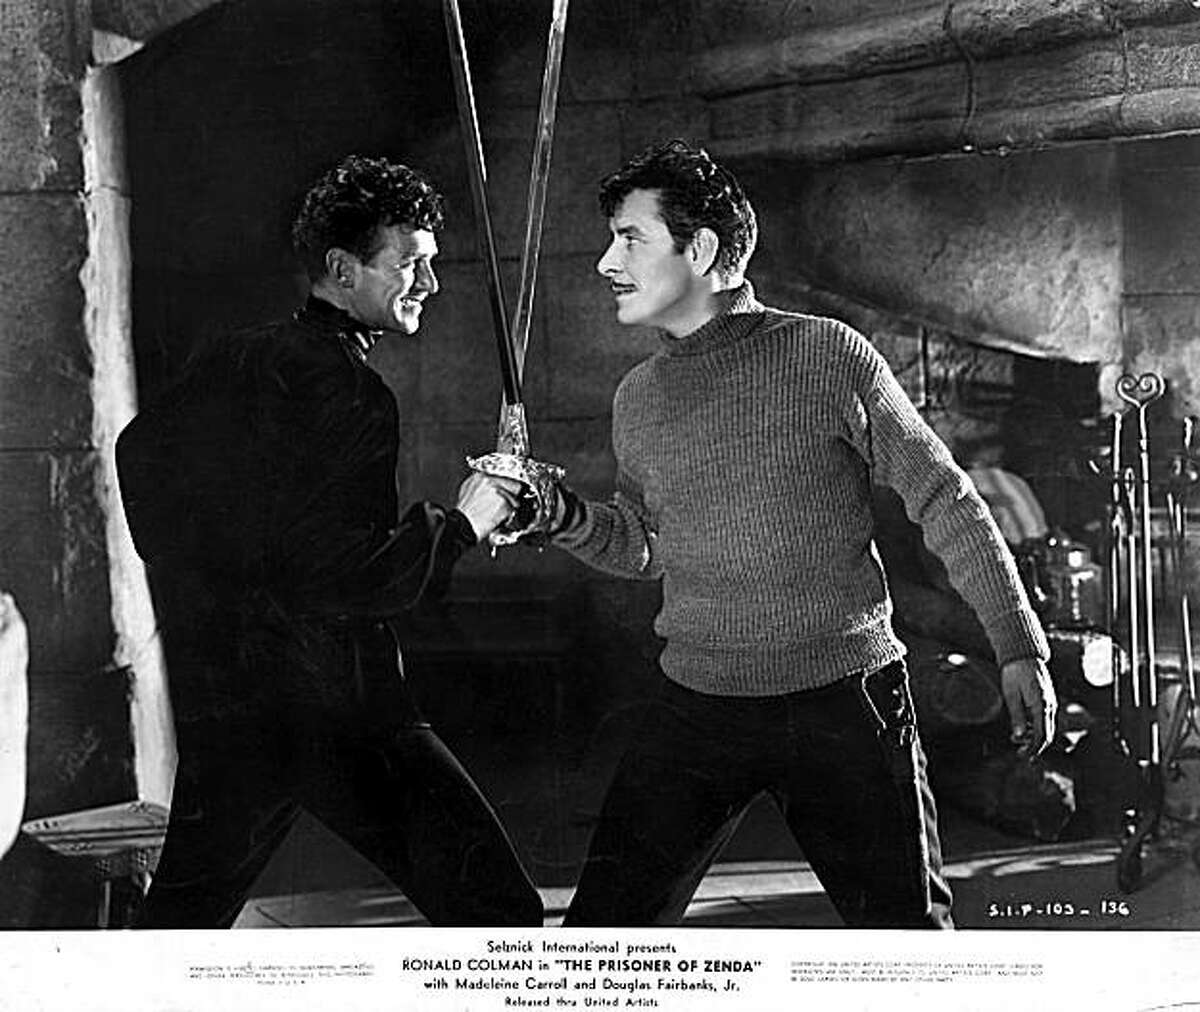 Douglas Fairbanks Jr. (left) and Ronald Colman cross swords in John Cromwell's 1937 classic "The Prisoner of Zenda."